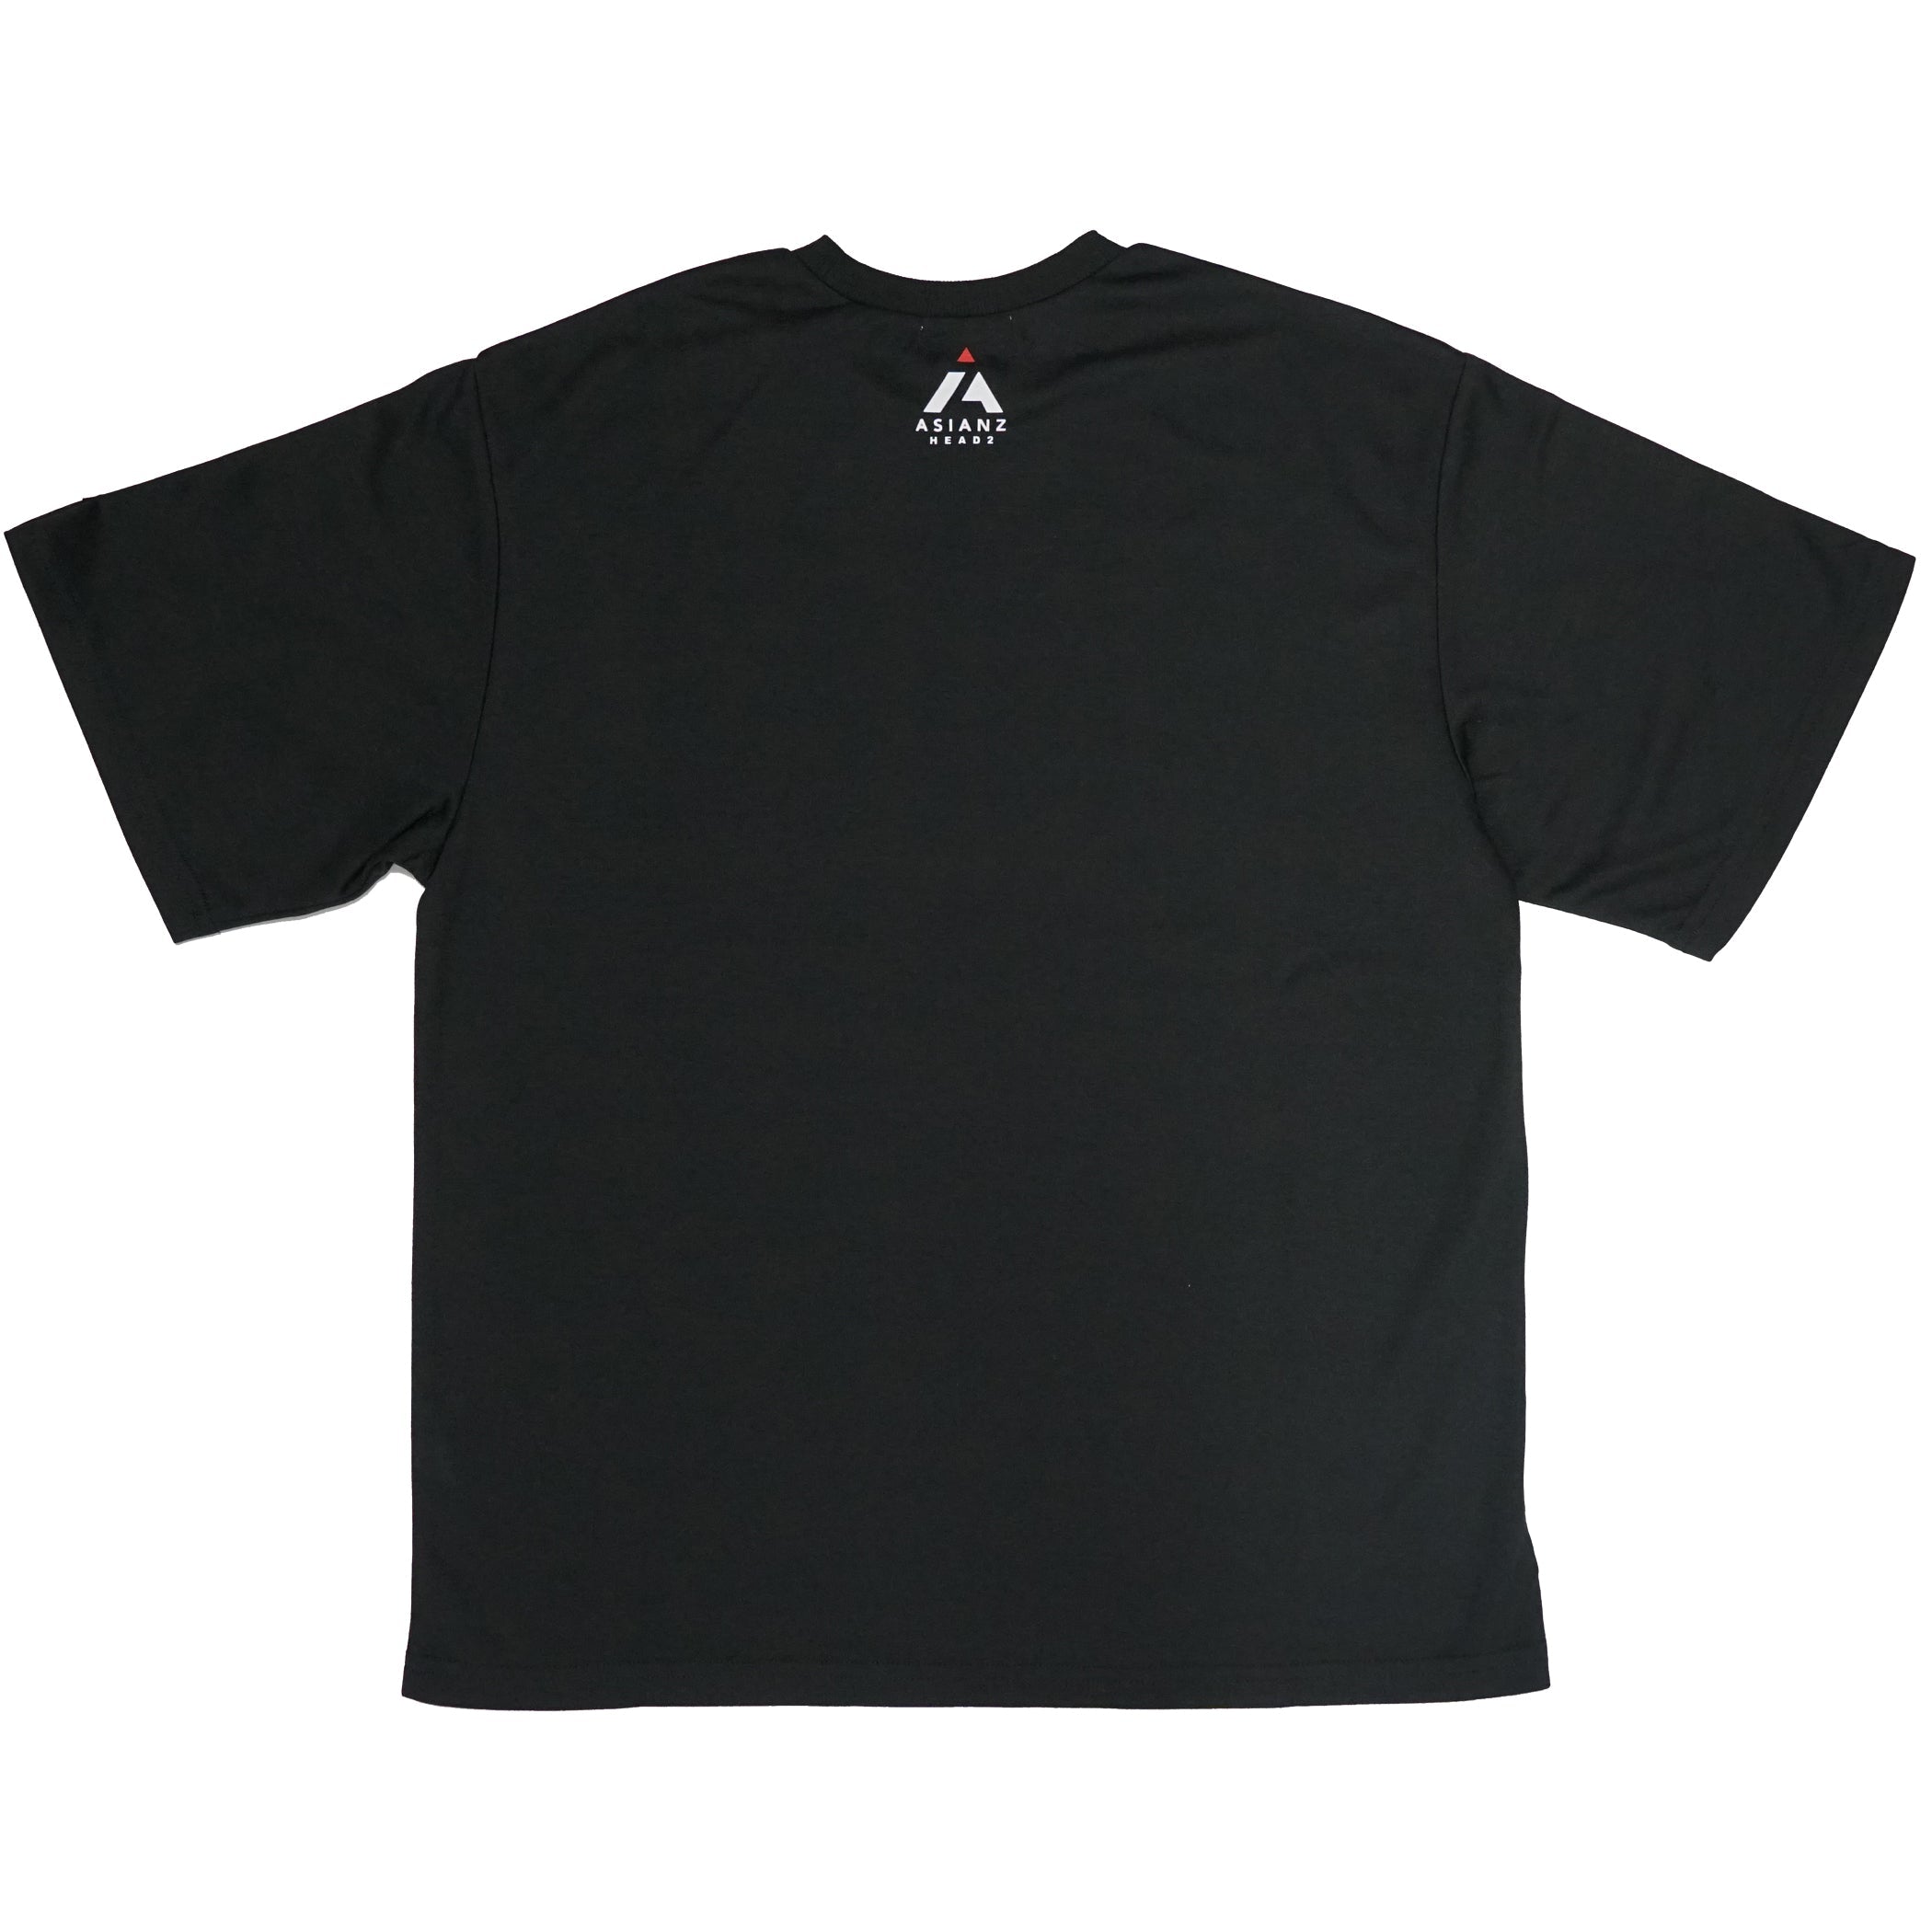 (セール商品) ASIANZ HEAD2 転写ビッグTシャツ キッズウェアー